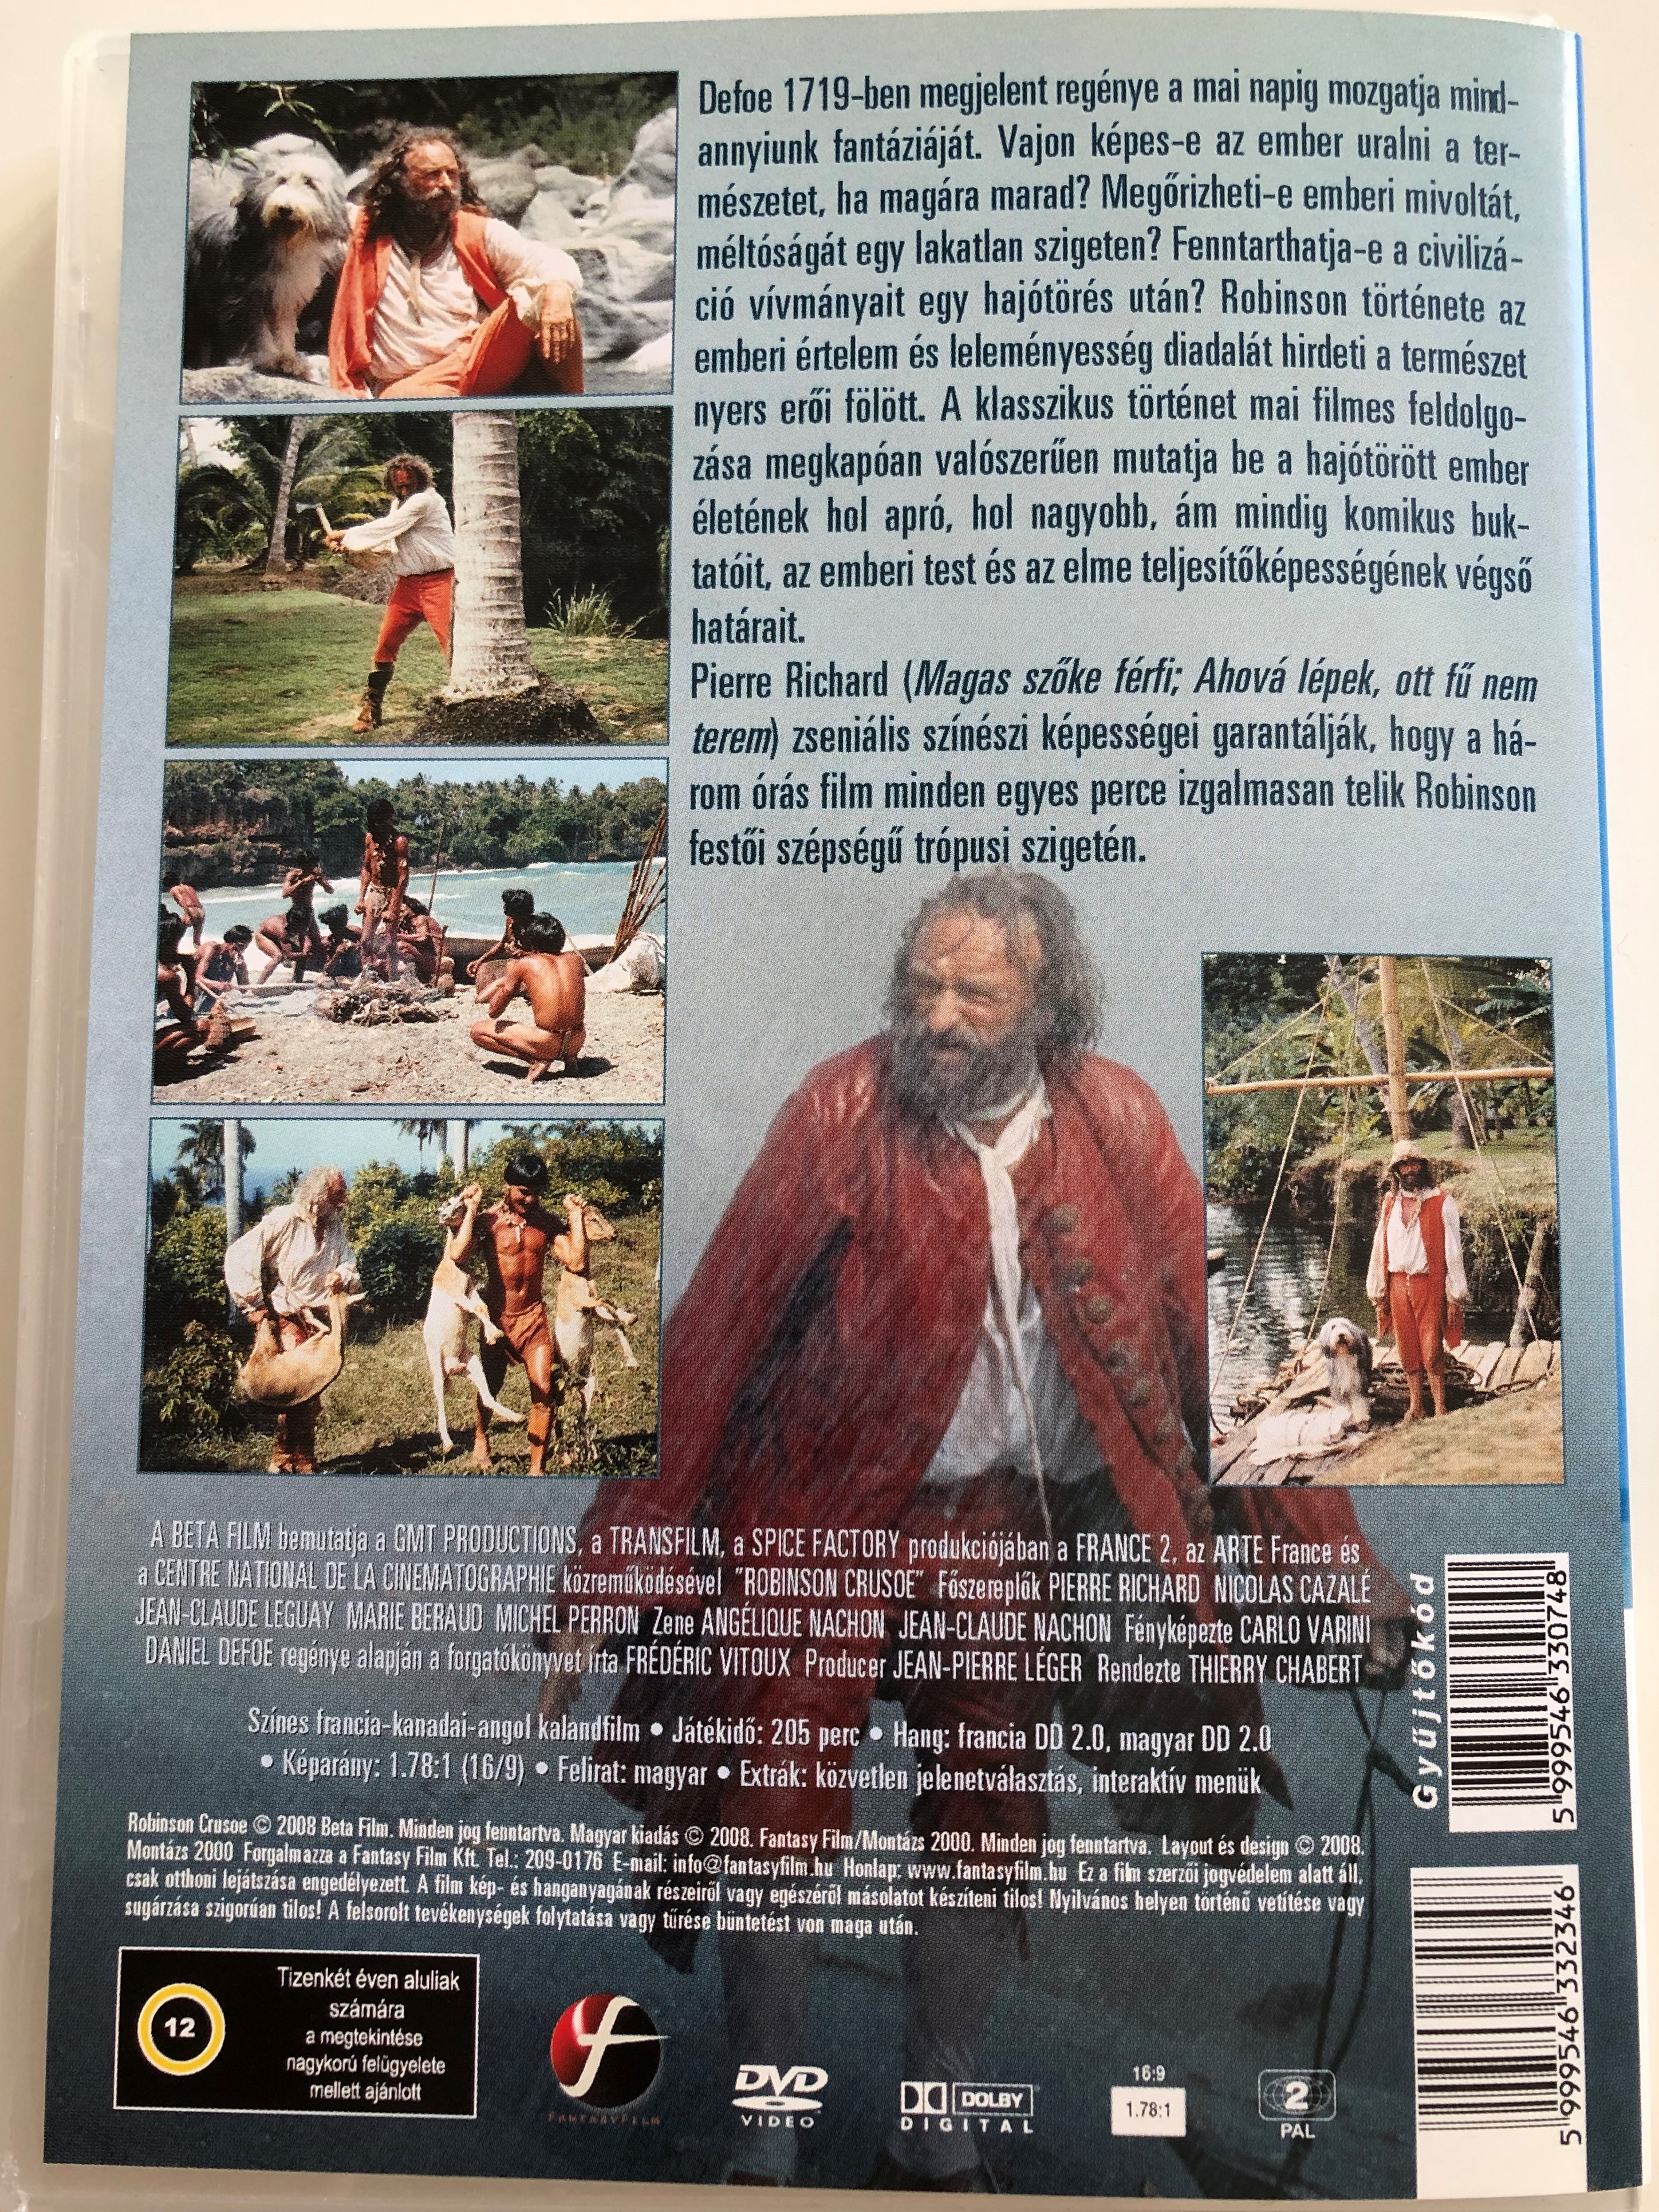 robinson-crusoe-dvd-2003-daniel-defoe-reg-ny-nek-nagyszab-s-feldolgoz-sa-2-.jpg